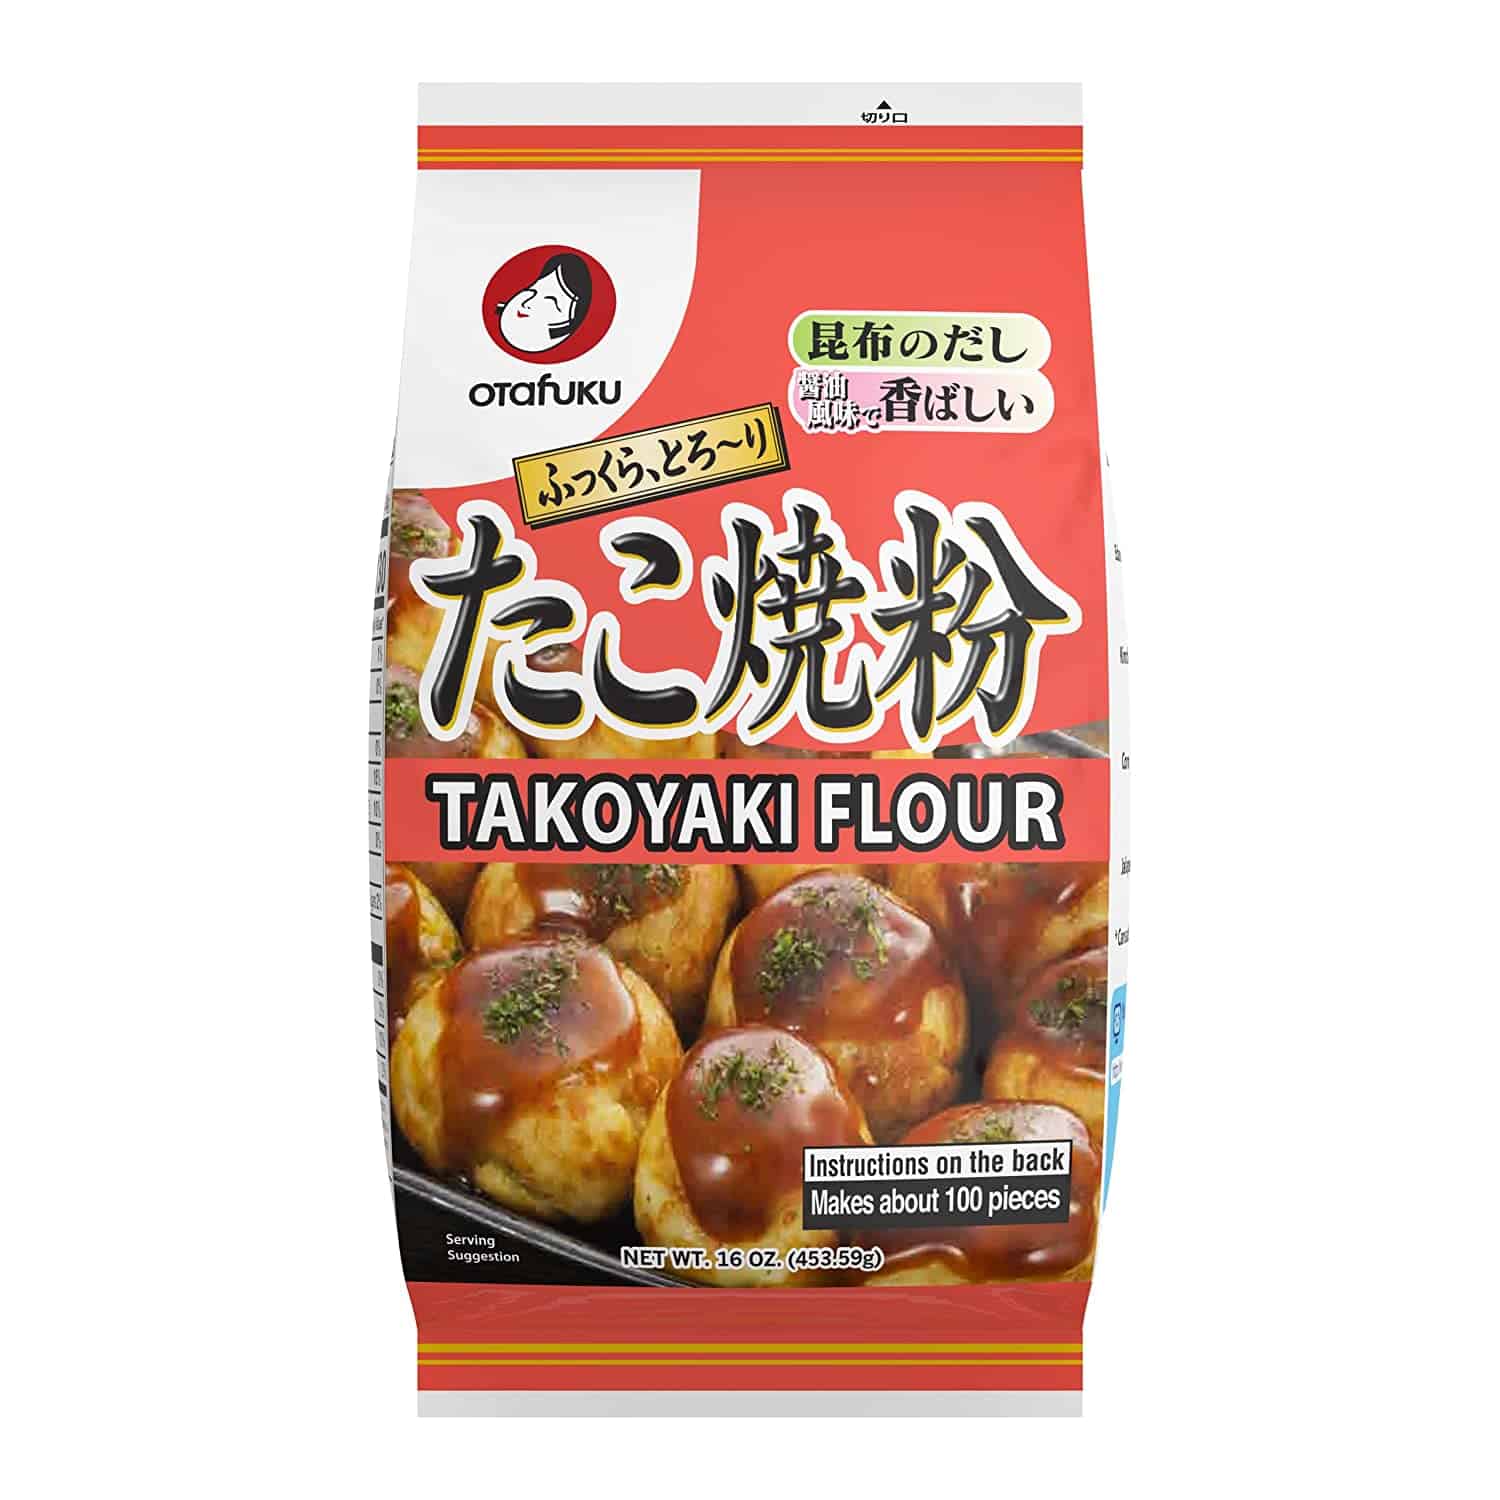 Best takoyaki batter mix overall- Otafuku Takoyaki Flour for Japanese Takoyaki